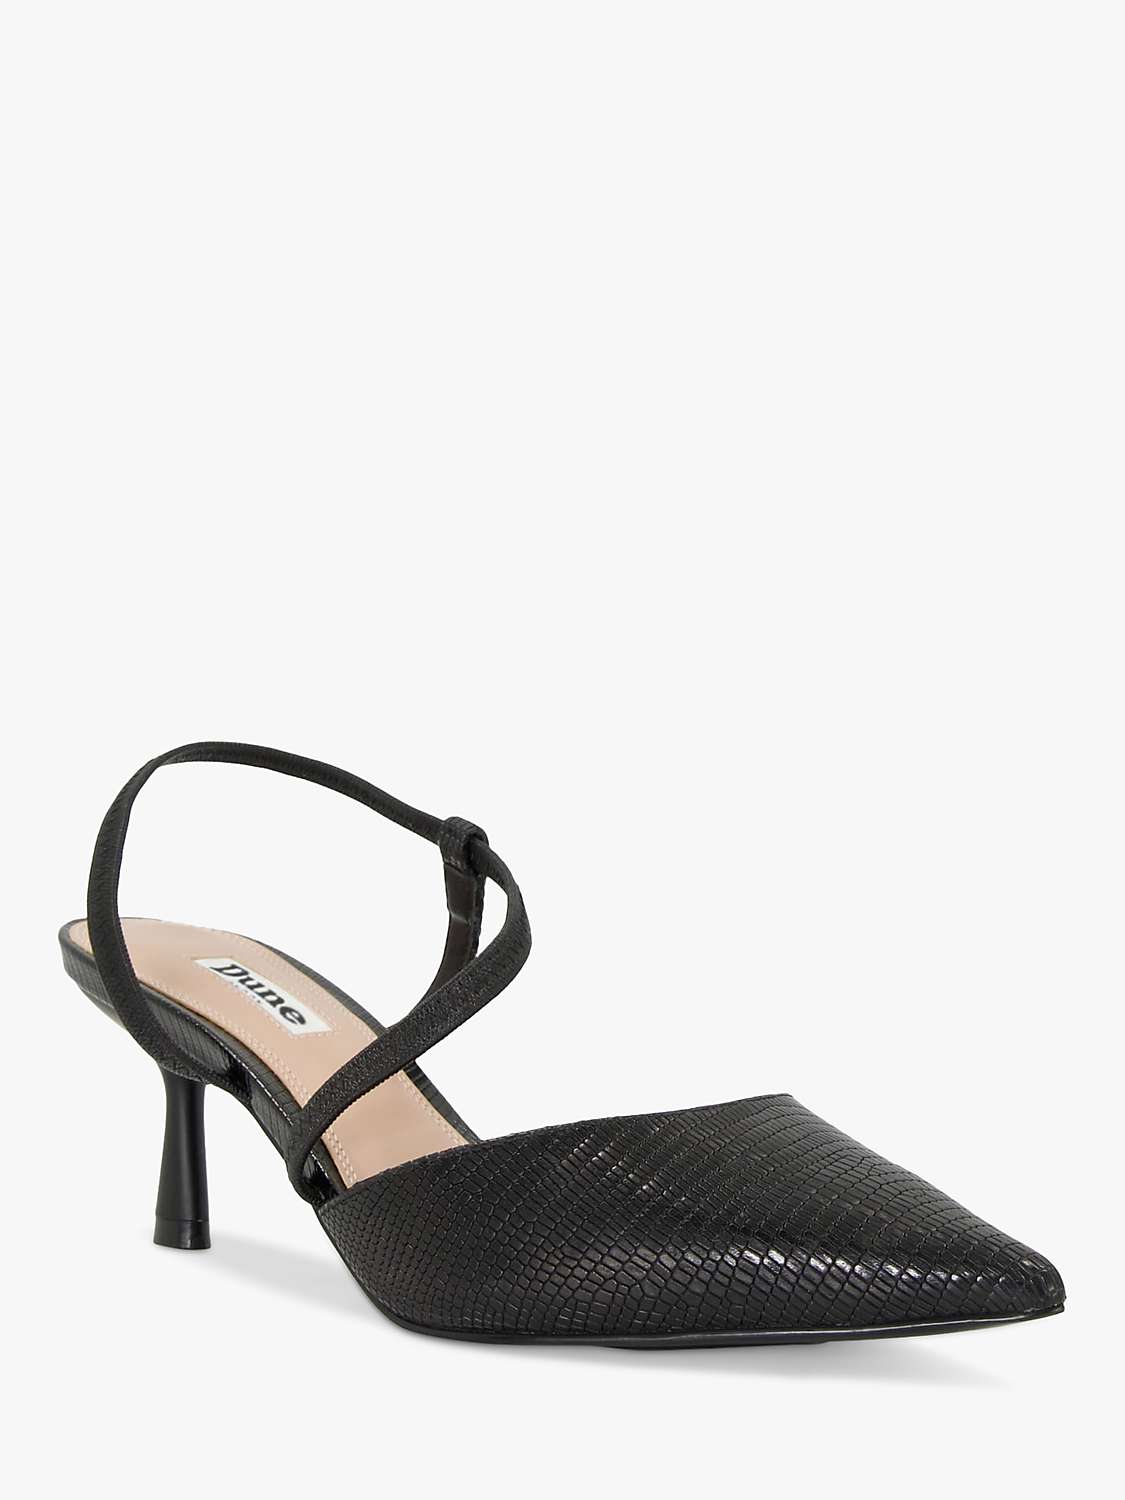 Buy Dune Citrus Leather Asymmetric Court Shoes, Black Online at johnlewis.com